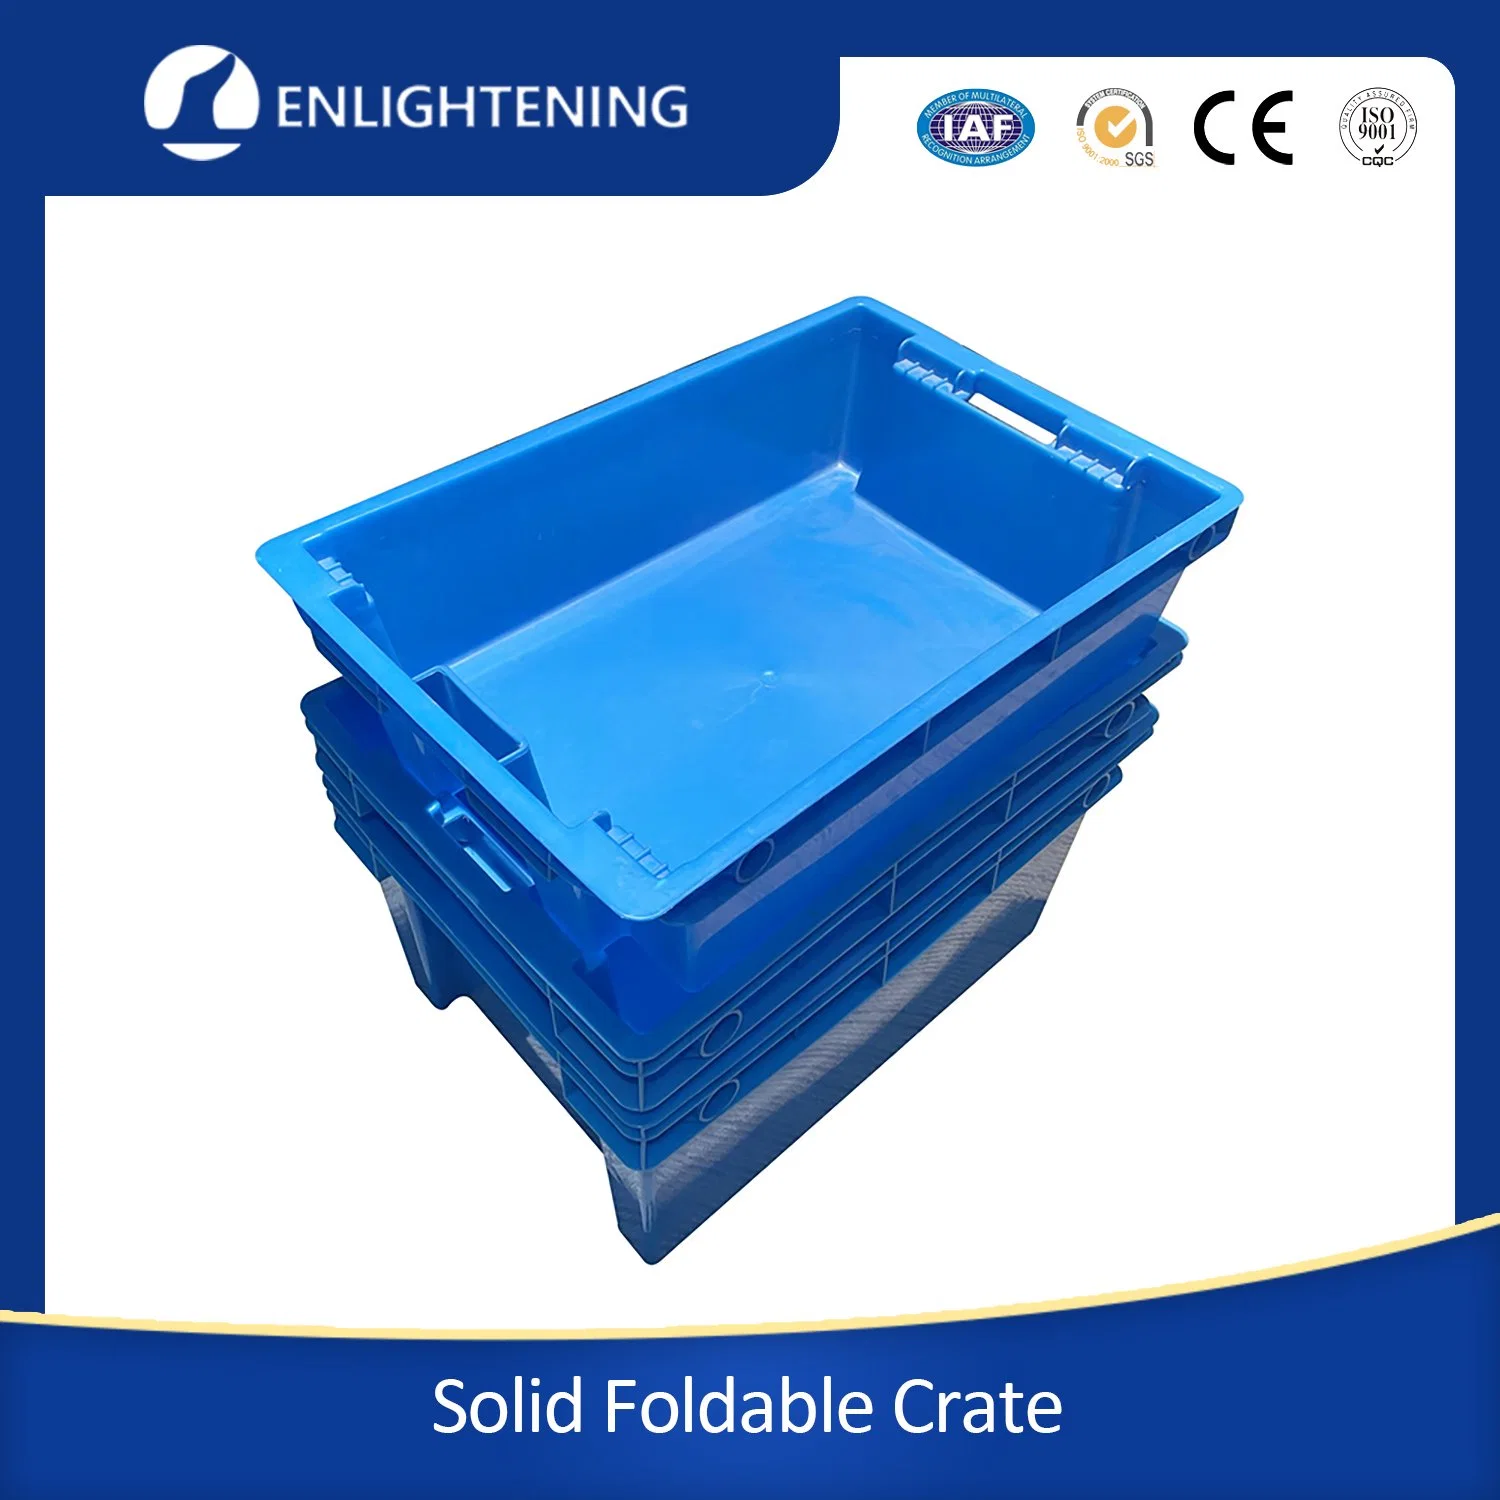 Porta-objetivas planas de plástico, Nestável e empilhável, com recipiente de plástico de cobertura Caixa de saco de armazenamento e transporte sólida Nestável